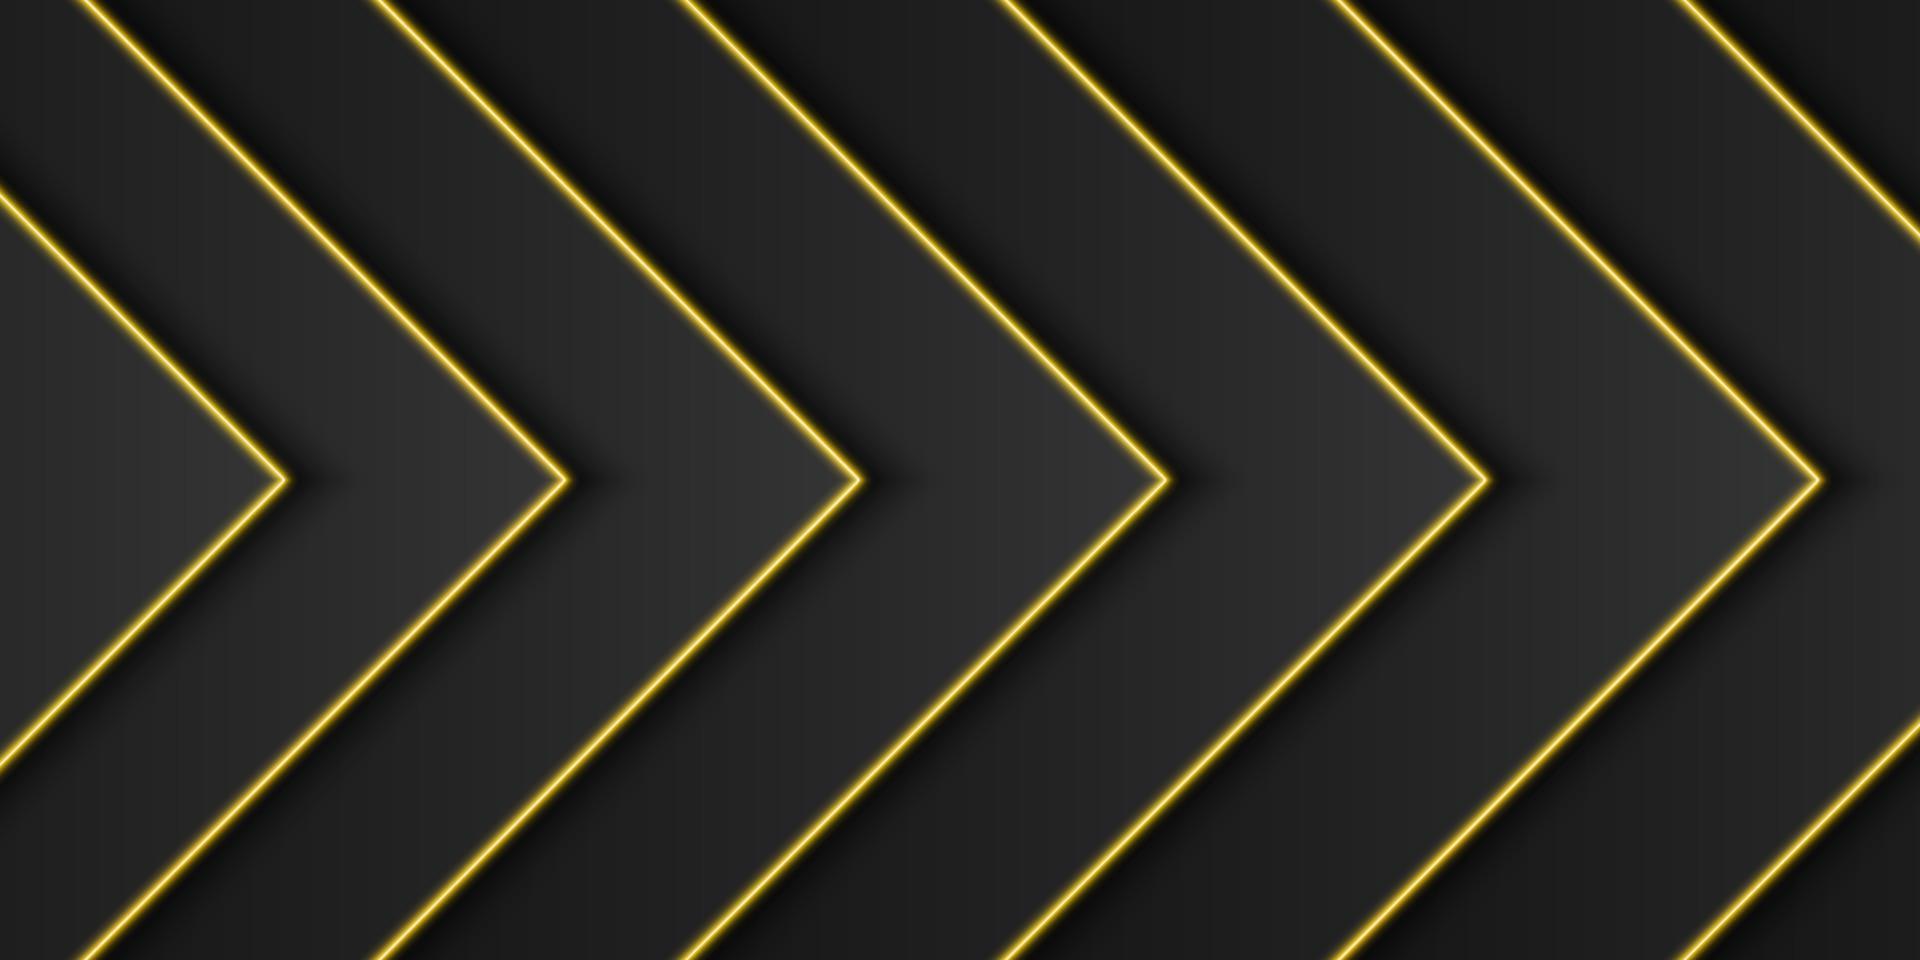 abstrakt guld metallisk, svart ram bakgrund, triangulärt överlappande lager med gul ljus linje, pil eller triangel form, mörk minimal design med kopia utrymme, vektor illustration